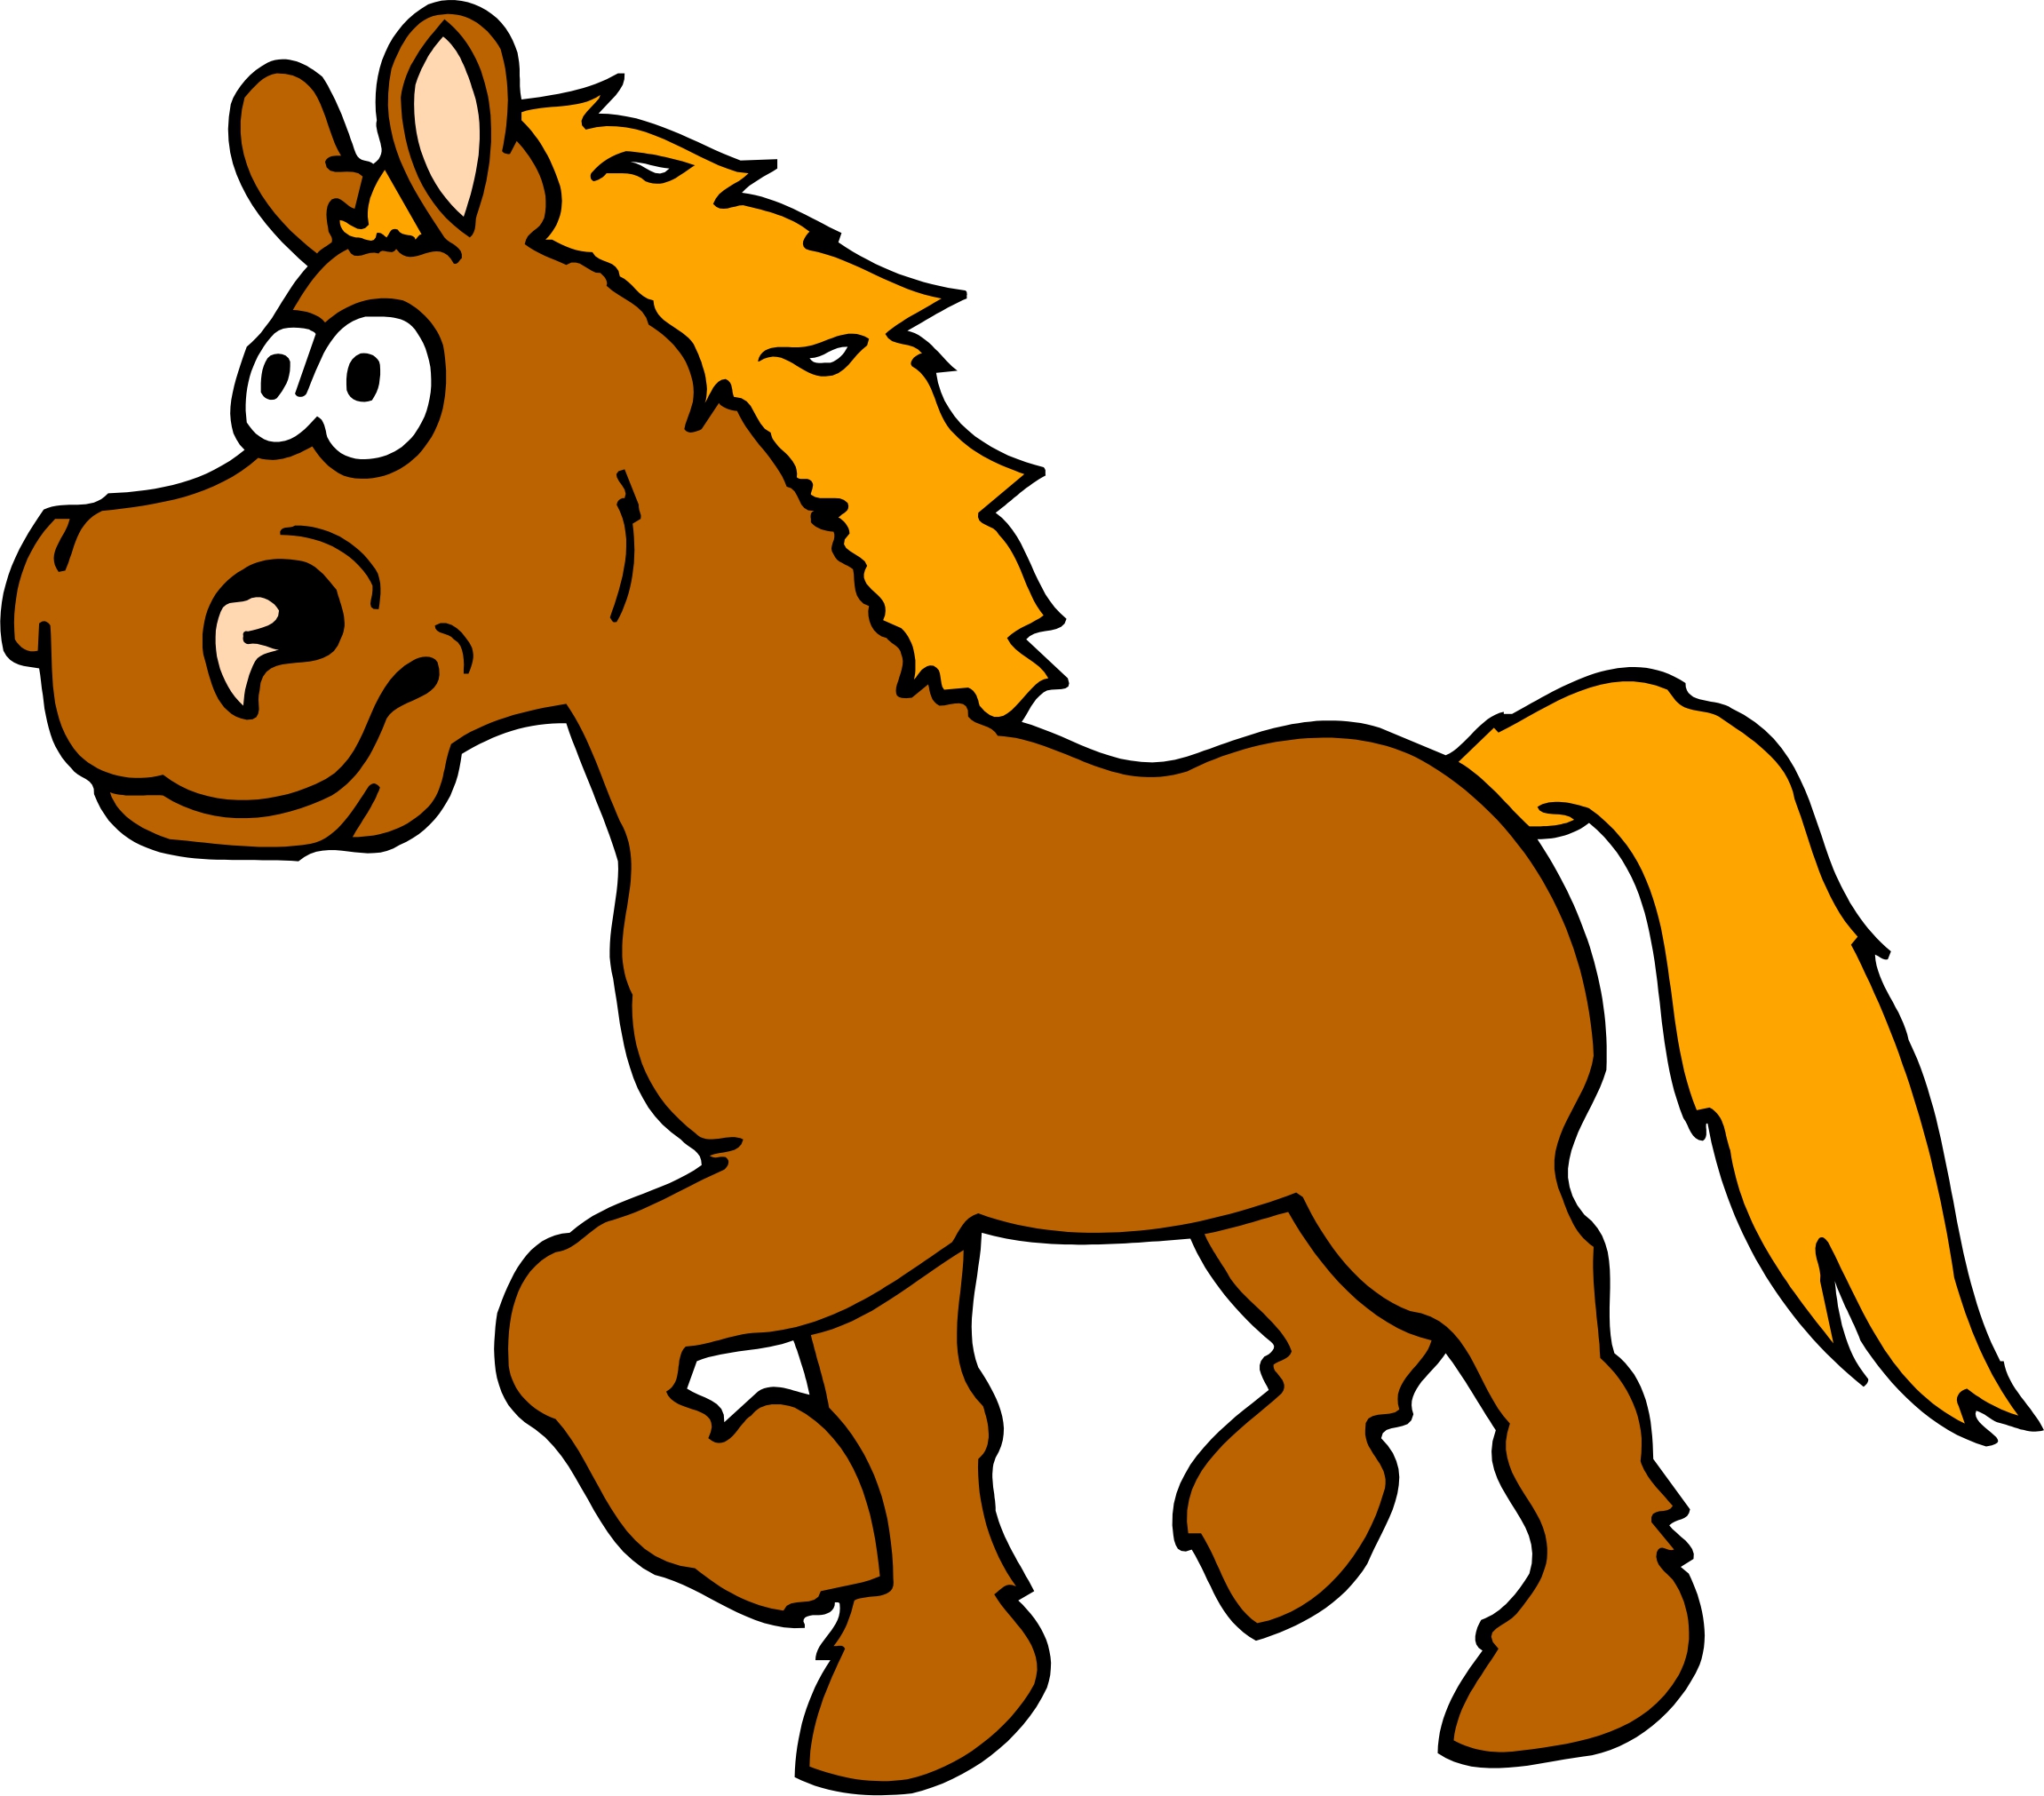 Images Of Cartoon Horses | Free Download Clip Art | Free Clip Art ...